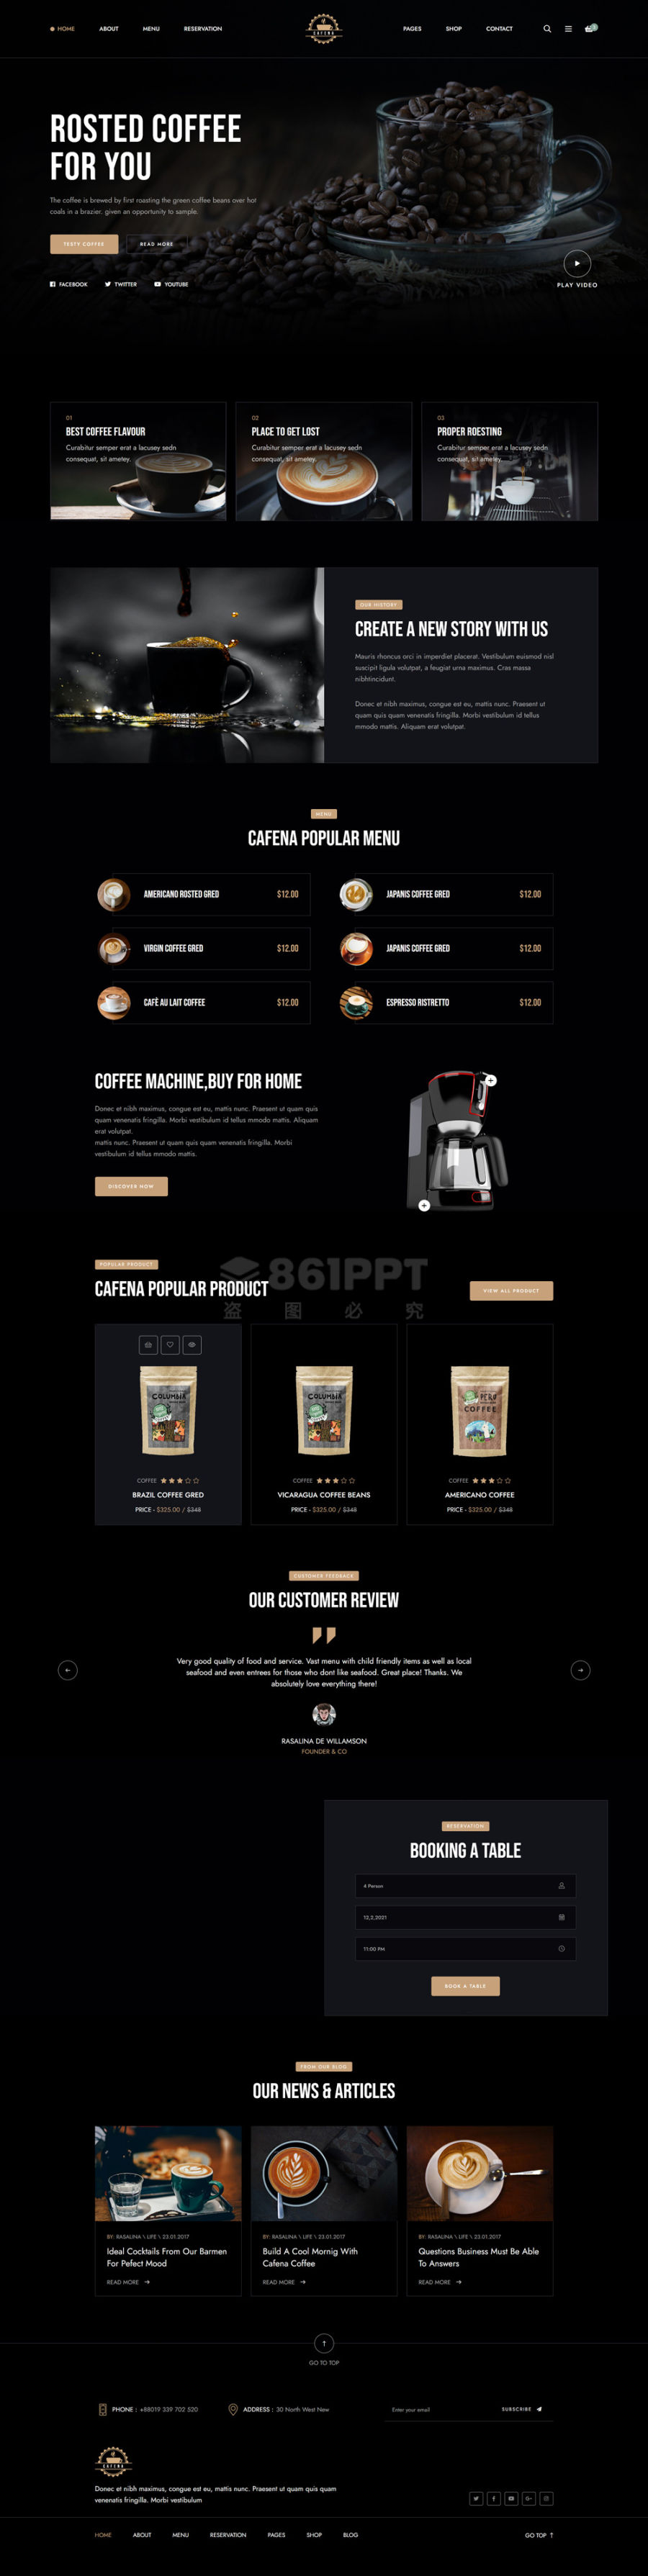 黑色创意的咖啡奶茶店铺商城html5模板